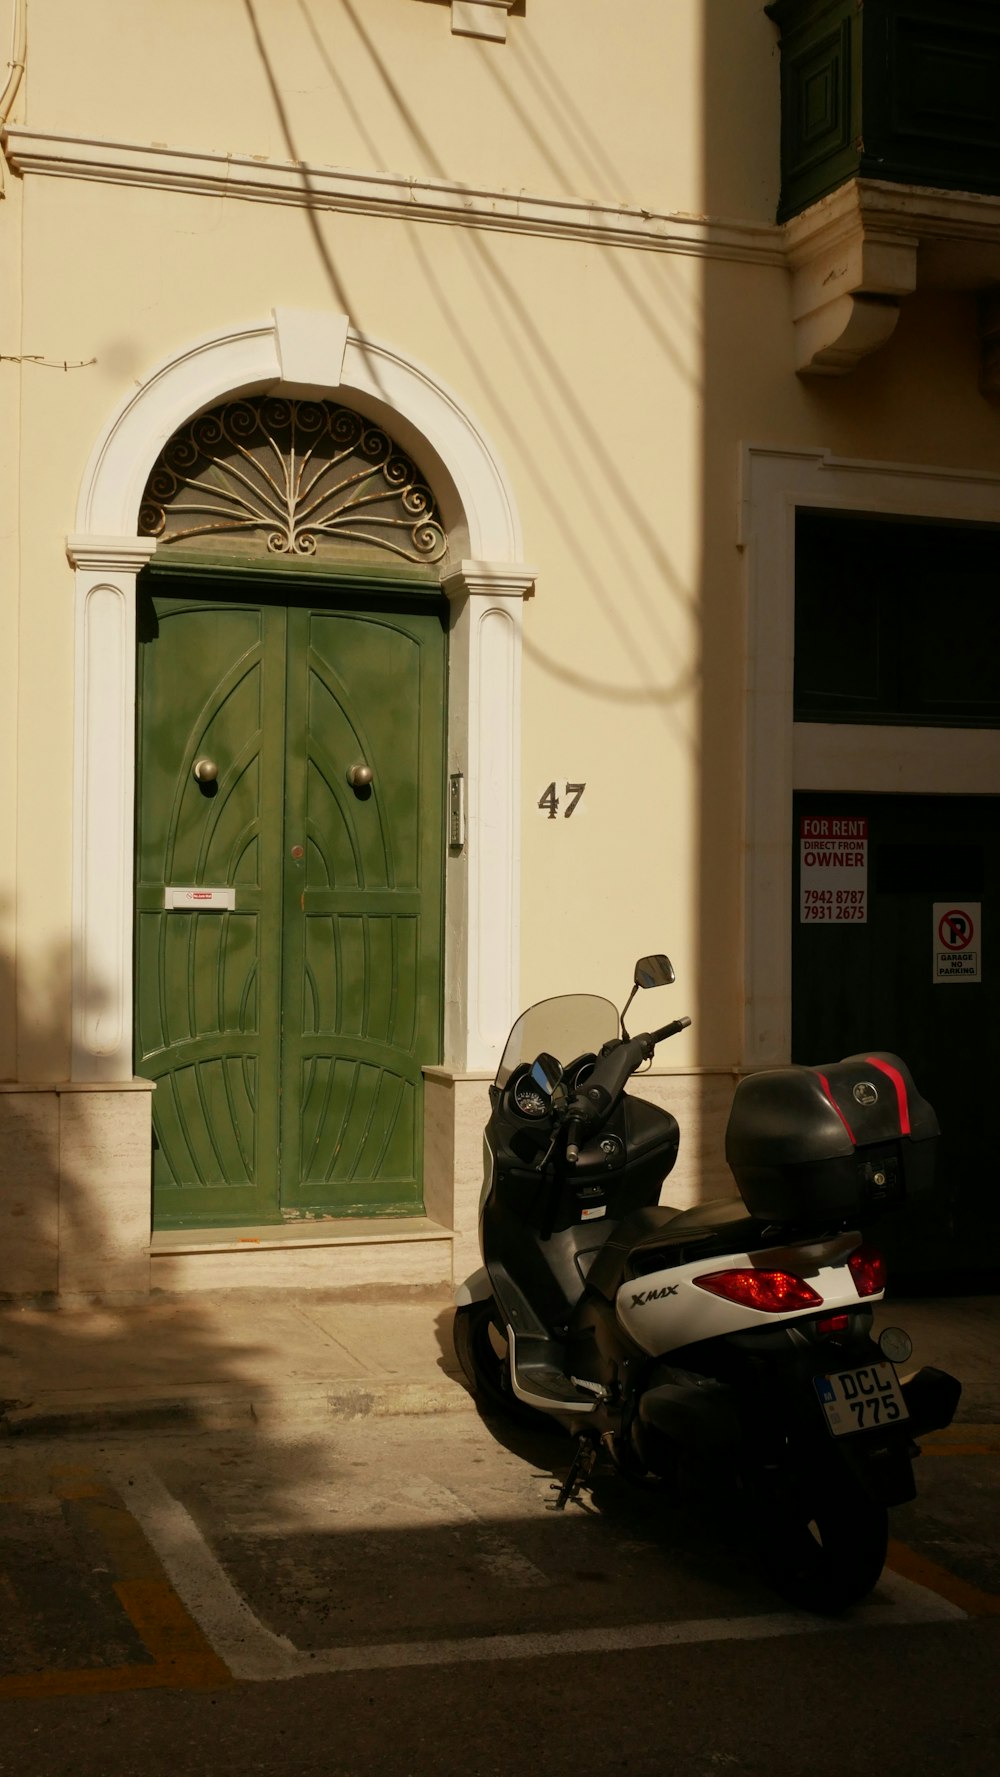 녹색 문 앞에 주차된 오토바이